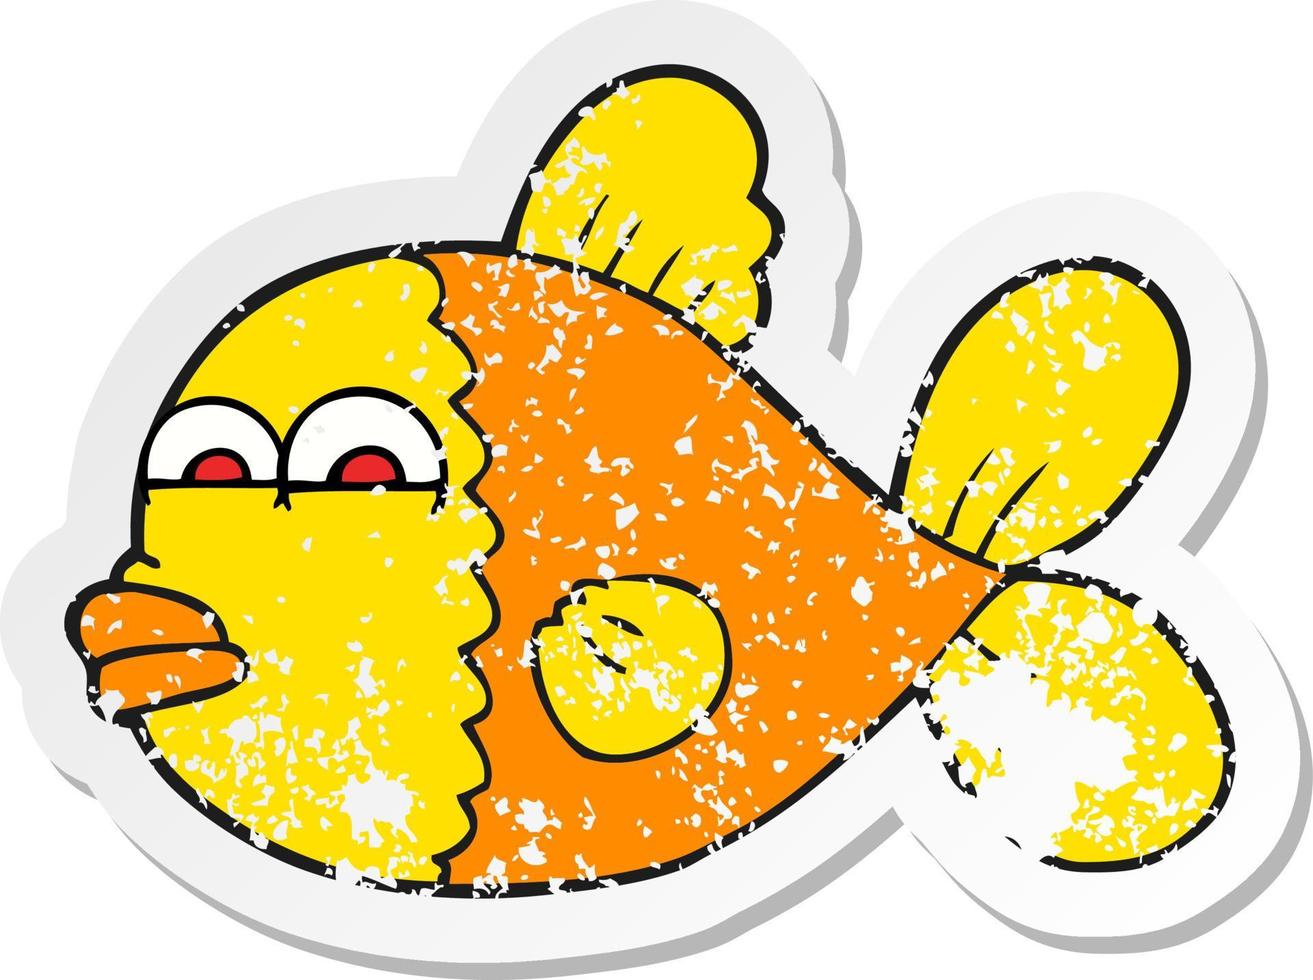 adesivo retrô angustiado de um peixe de desenho animado vetor